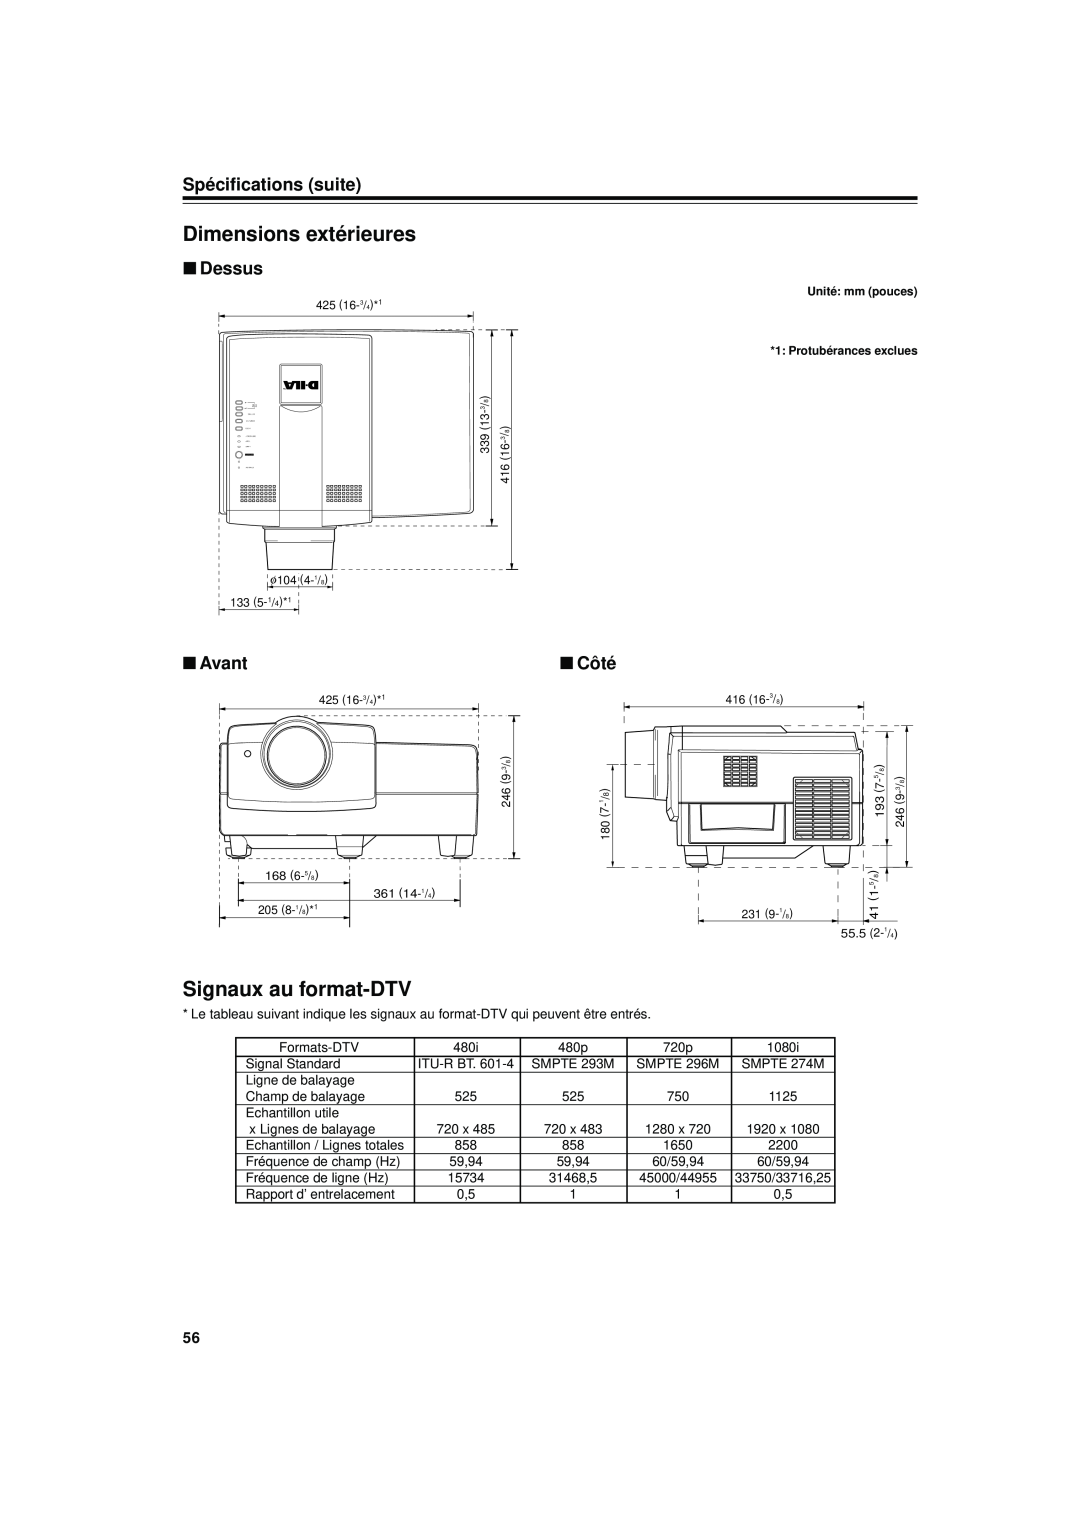 JVC DLA-S15U manual Dimensions extérieures, Signaux au format-DTV, Spécifications suite, Dessus, Avant, Côté 